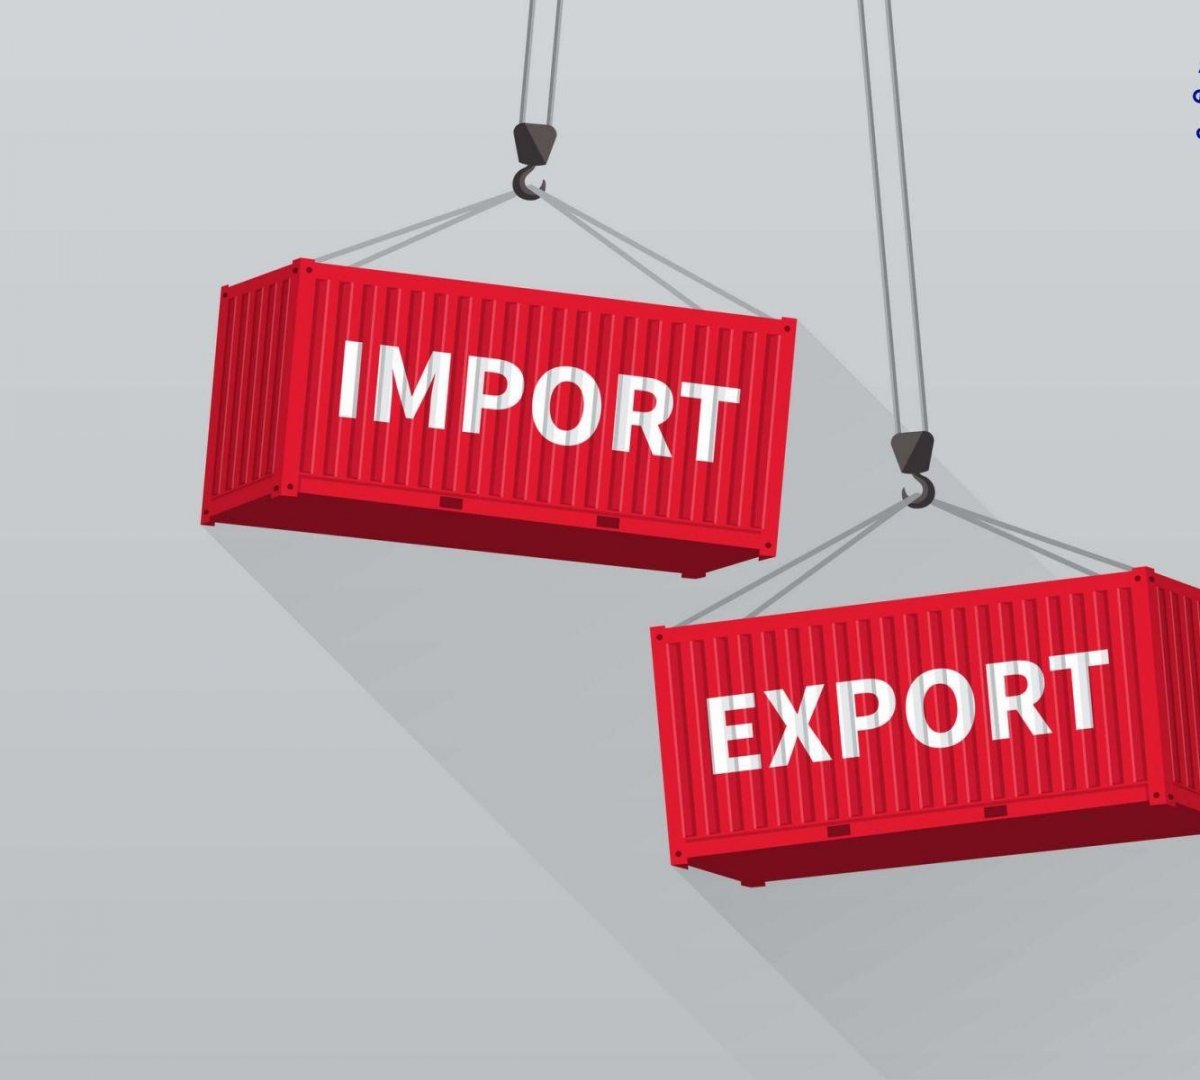 Б.Дэлгэрсүрэн: Экспорт, импортын зохицуулалт алдагдсан нь Гадаад худалдааны яамгүйтэй холбоотой 